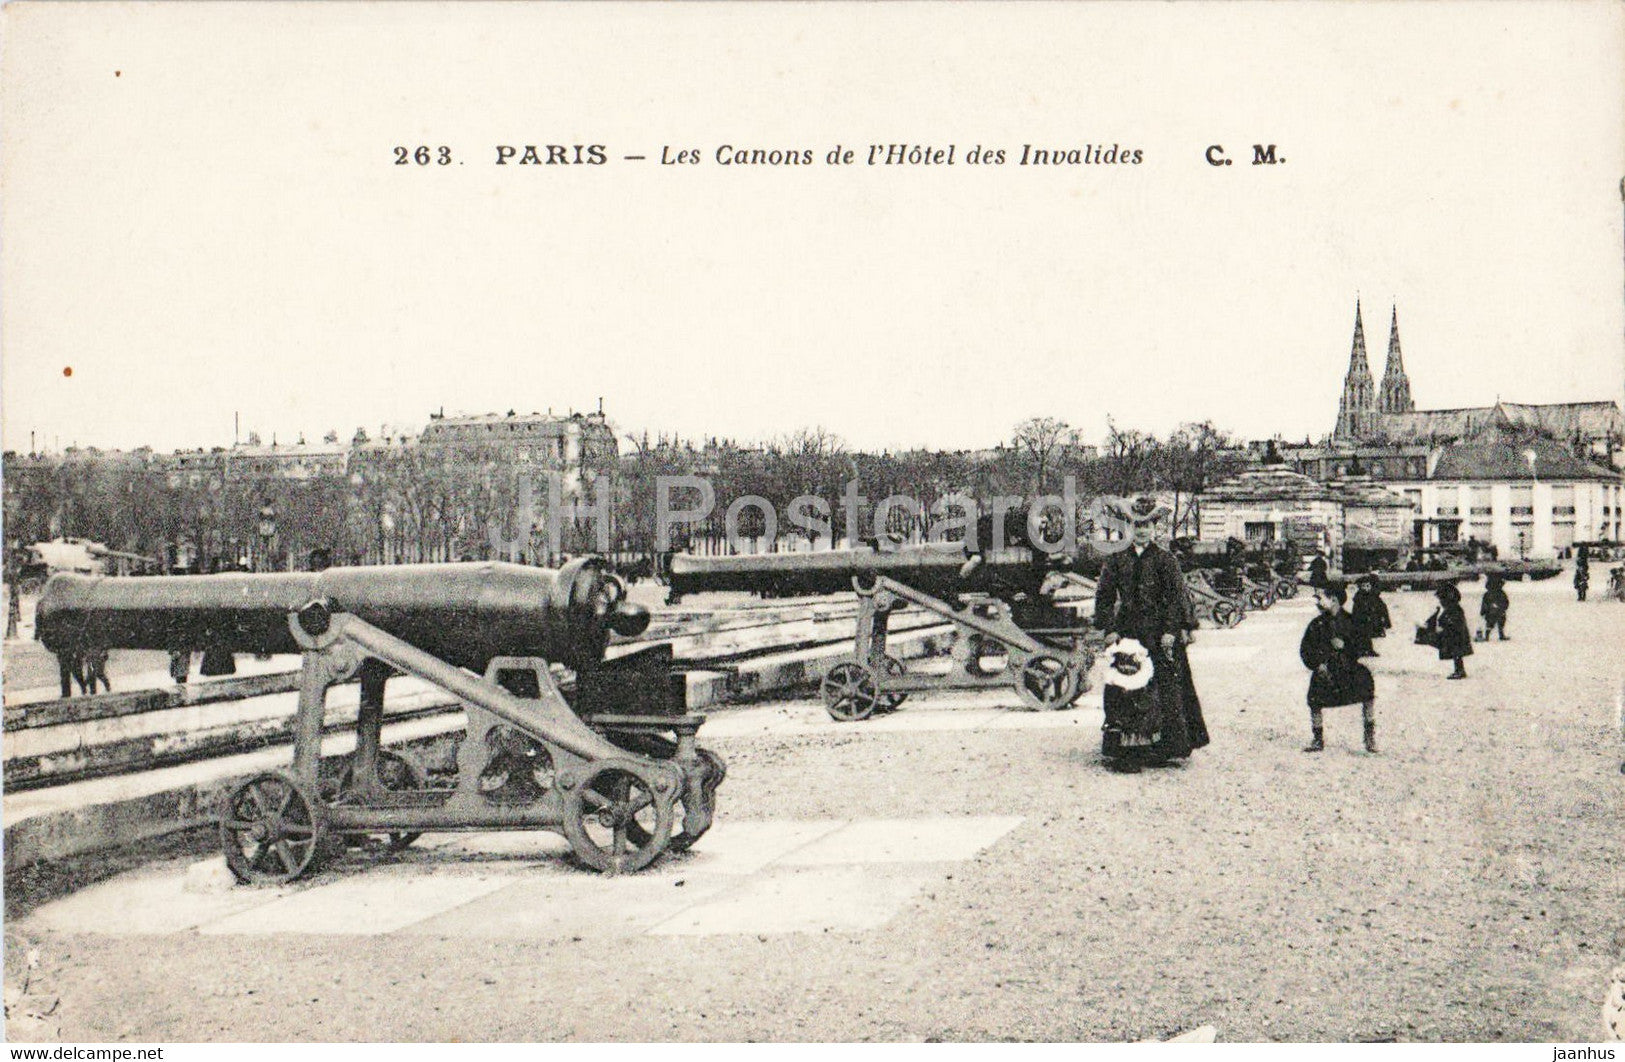 Paris - Les Canons de l'Hotel des Invalides - cannon - military - 263 - old postcard - France - unused - JH Postcards